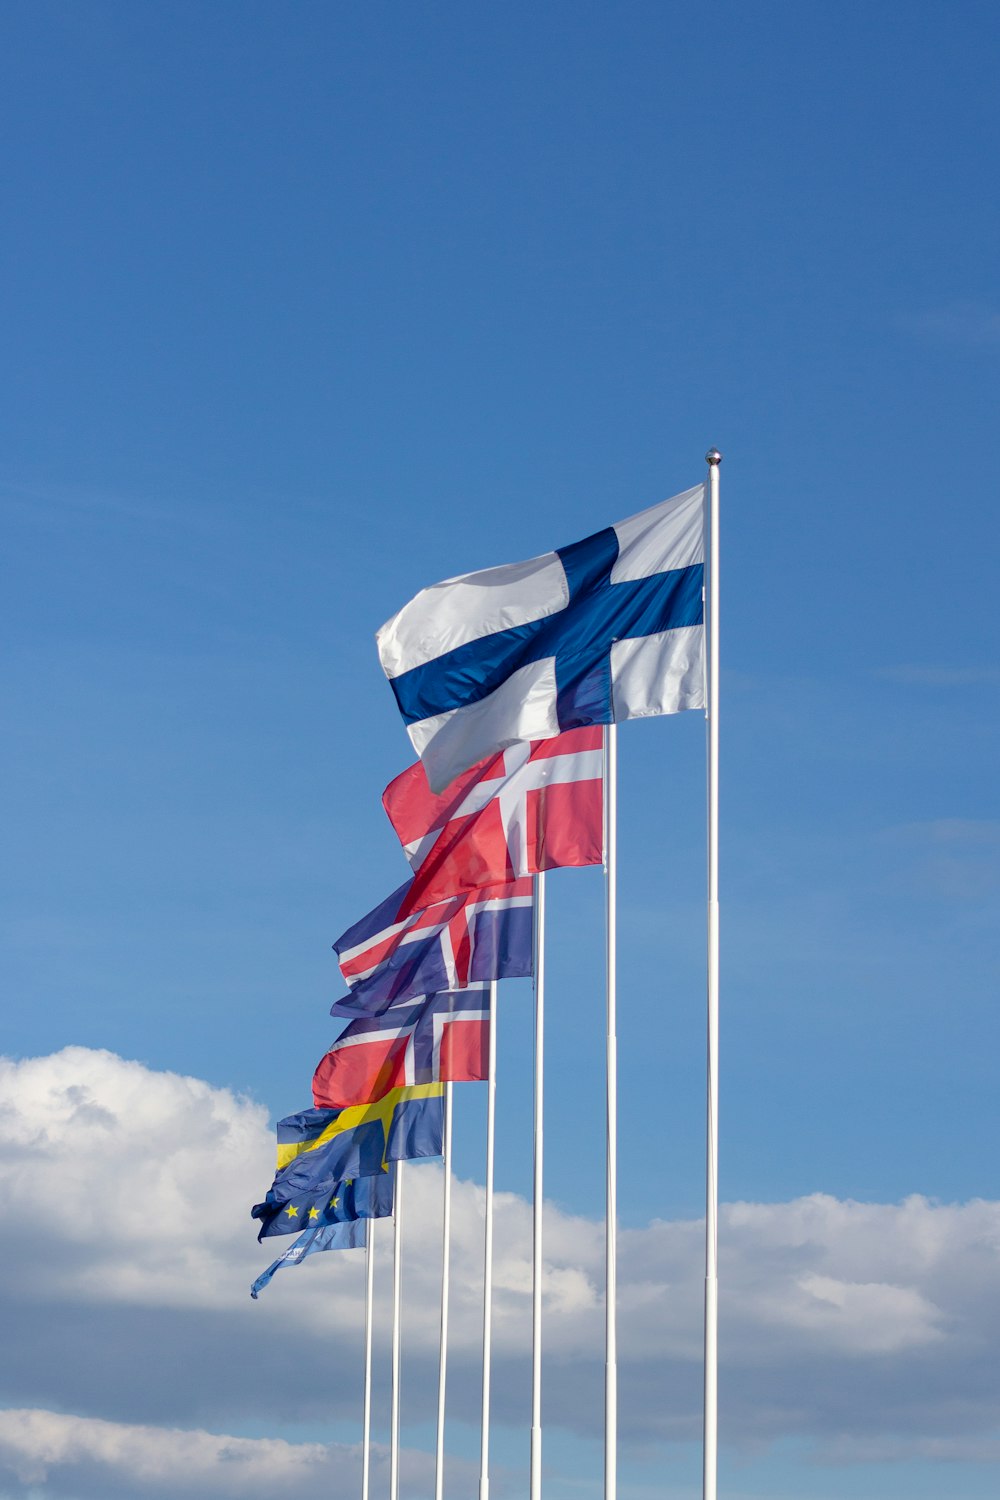 bandera de rayas blancas, rojas y azules bajo el cielo azul durante el día